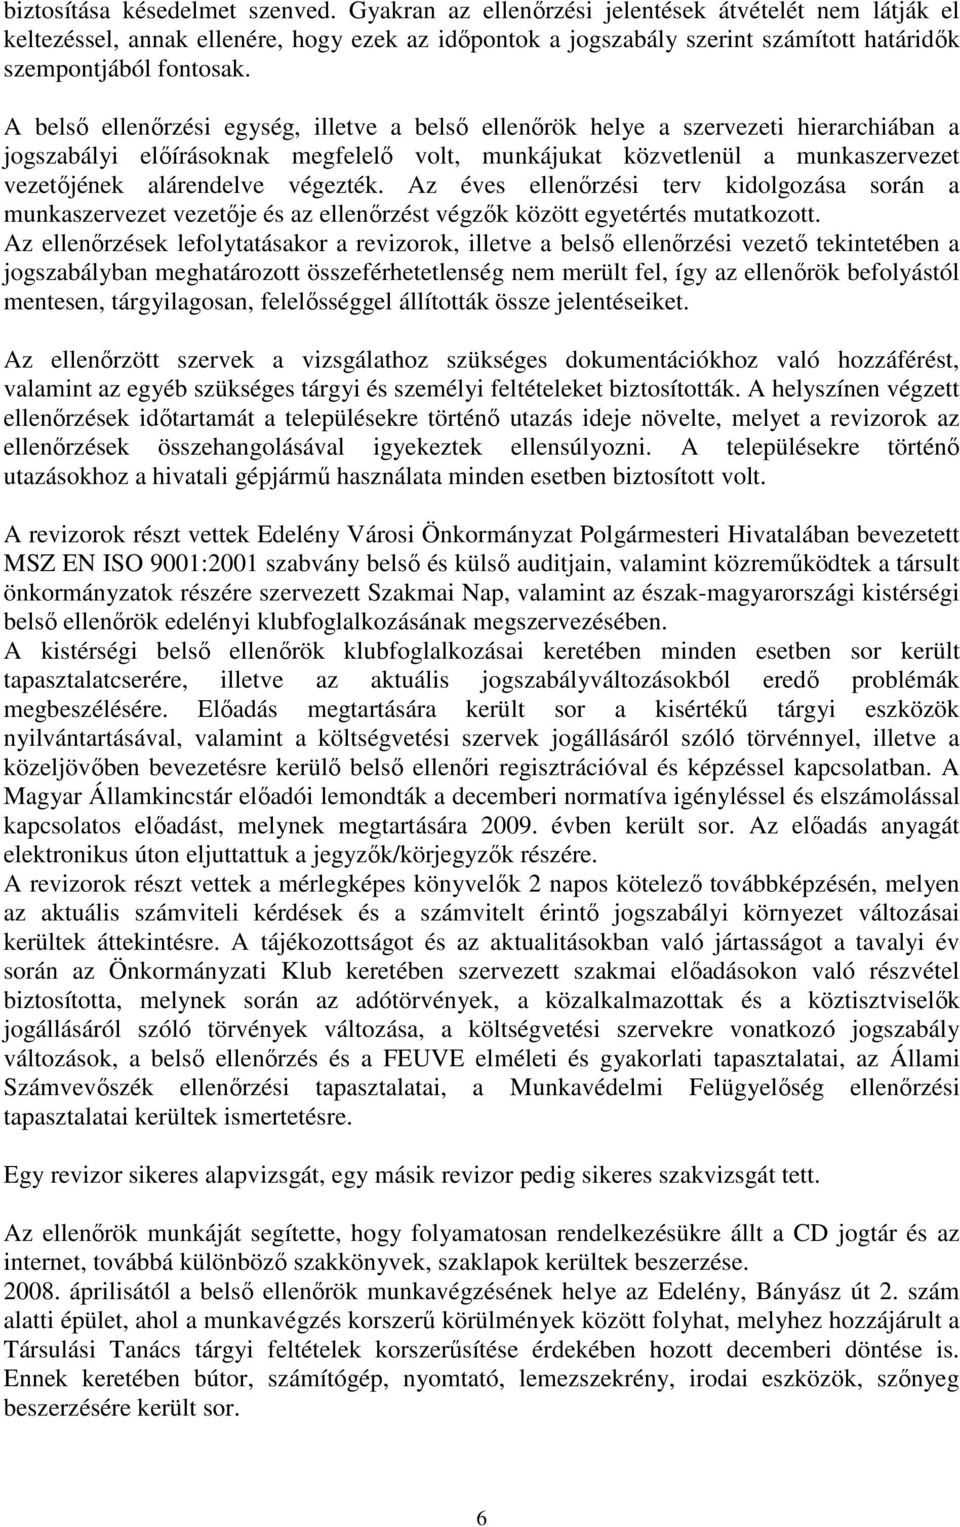 A belsı ellenırzési egység, illetve a belsı ellenırök helye a szervezeti hierarchiában a jogszabályi elıírásoknak megfelelı volt, munkájukat közvetlenül a munkaszervezet vezetıjének alárendelve